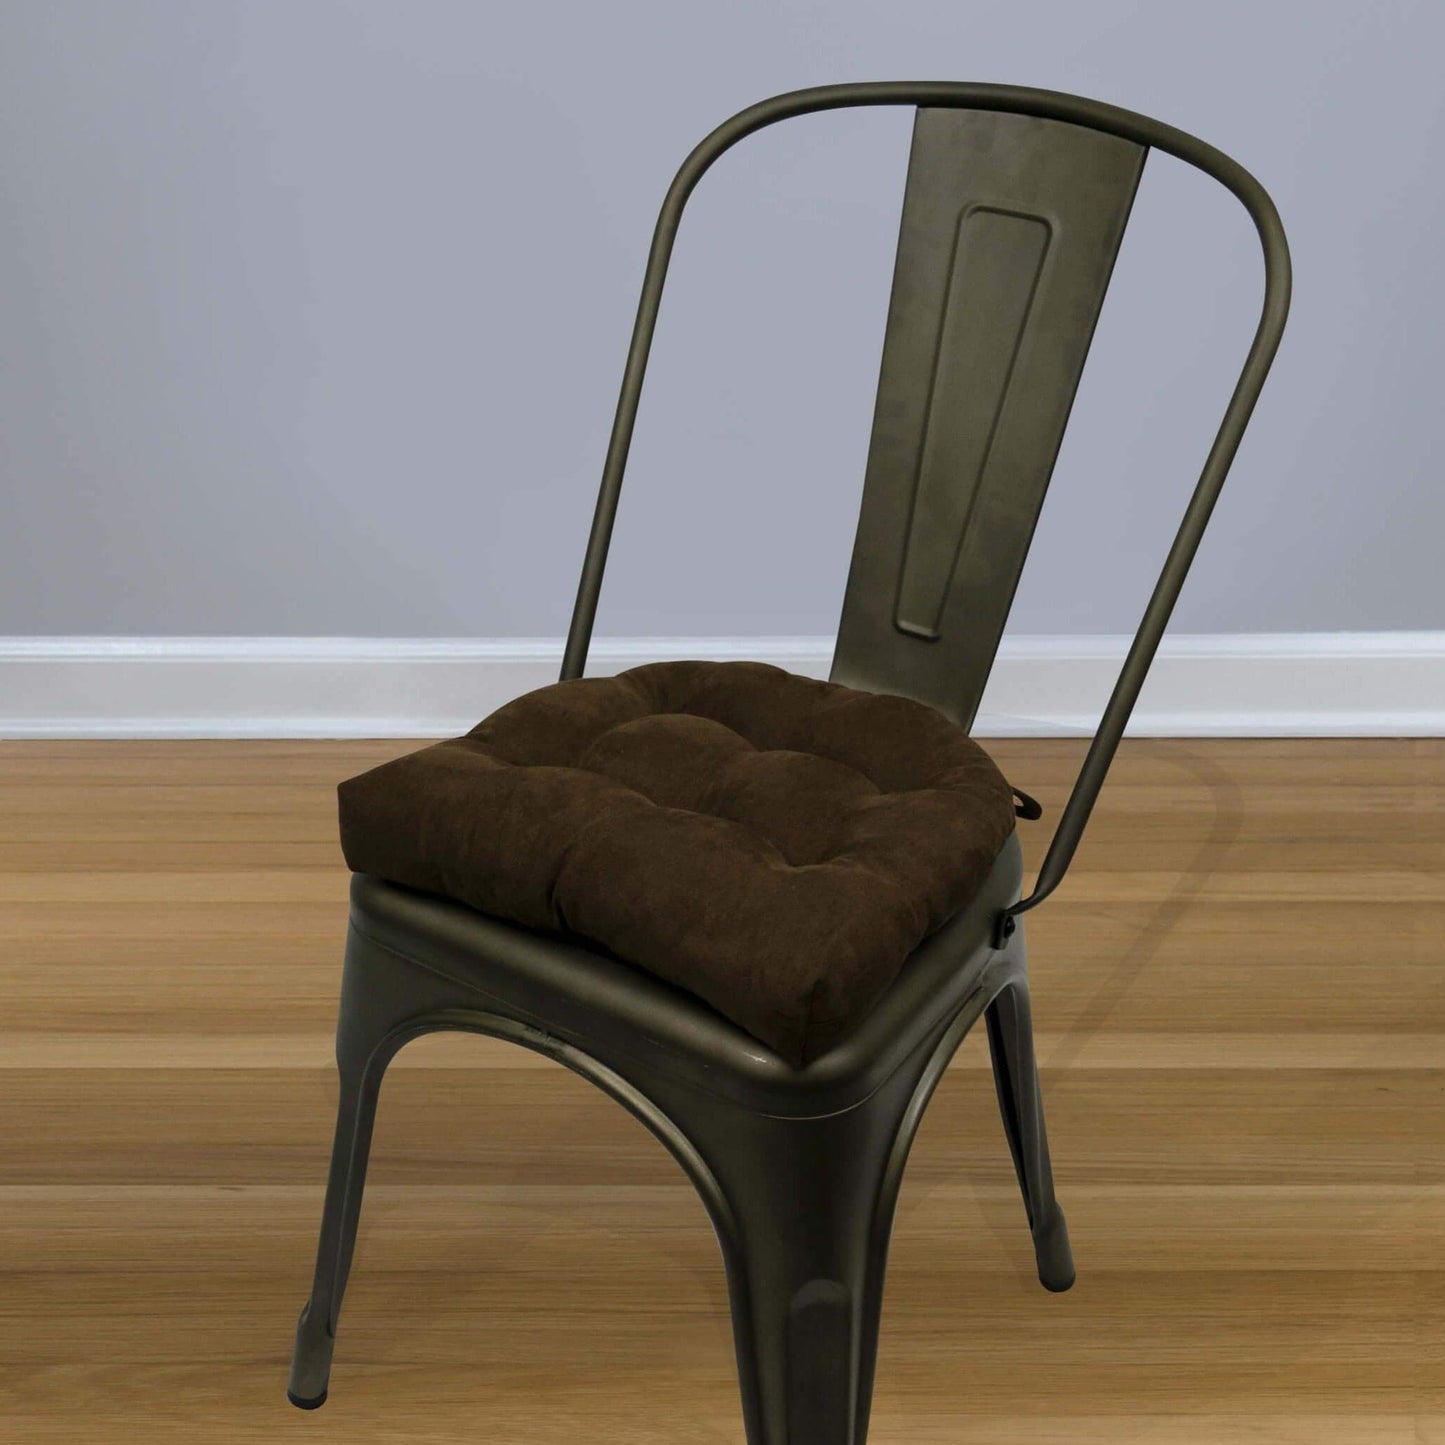 Micro-Suede Coffee Bean Brown Industrial Chair Cushion - Latex Foam Fill - Barnett Home Decor